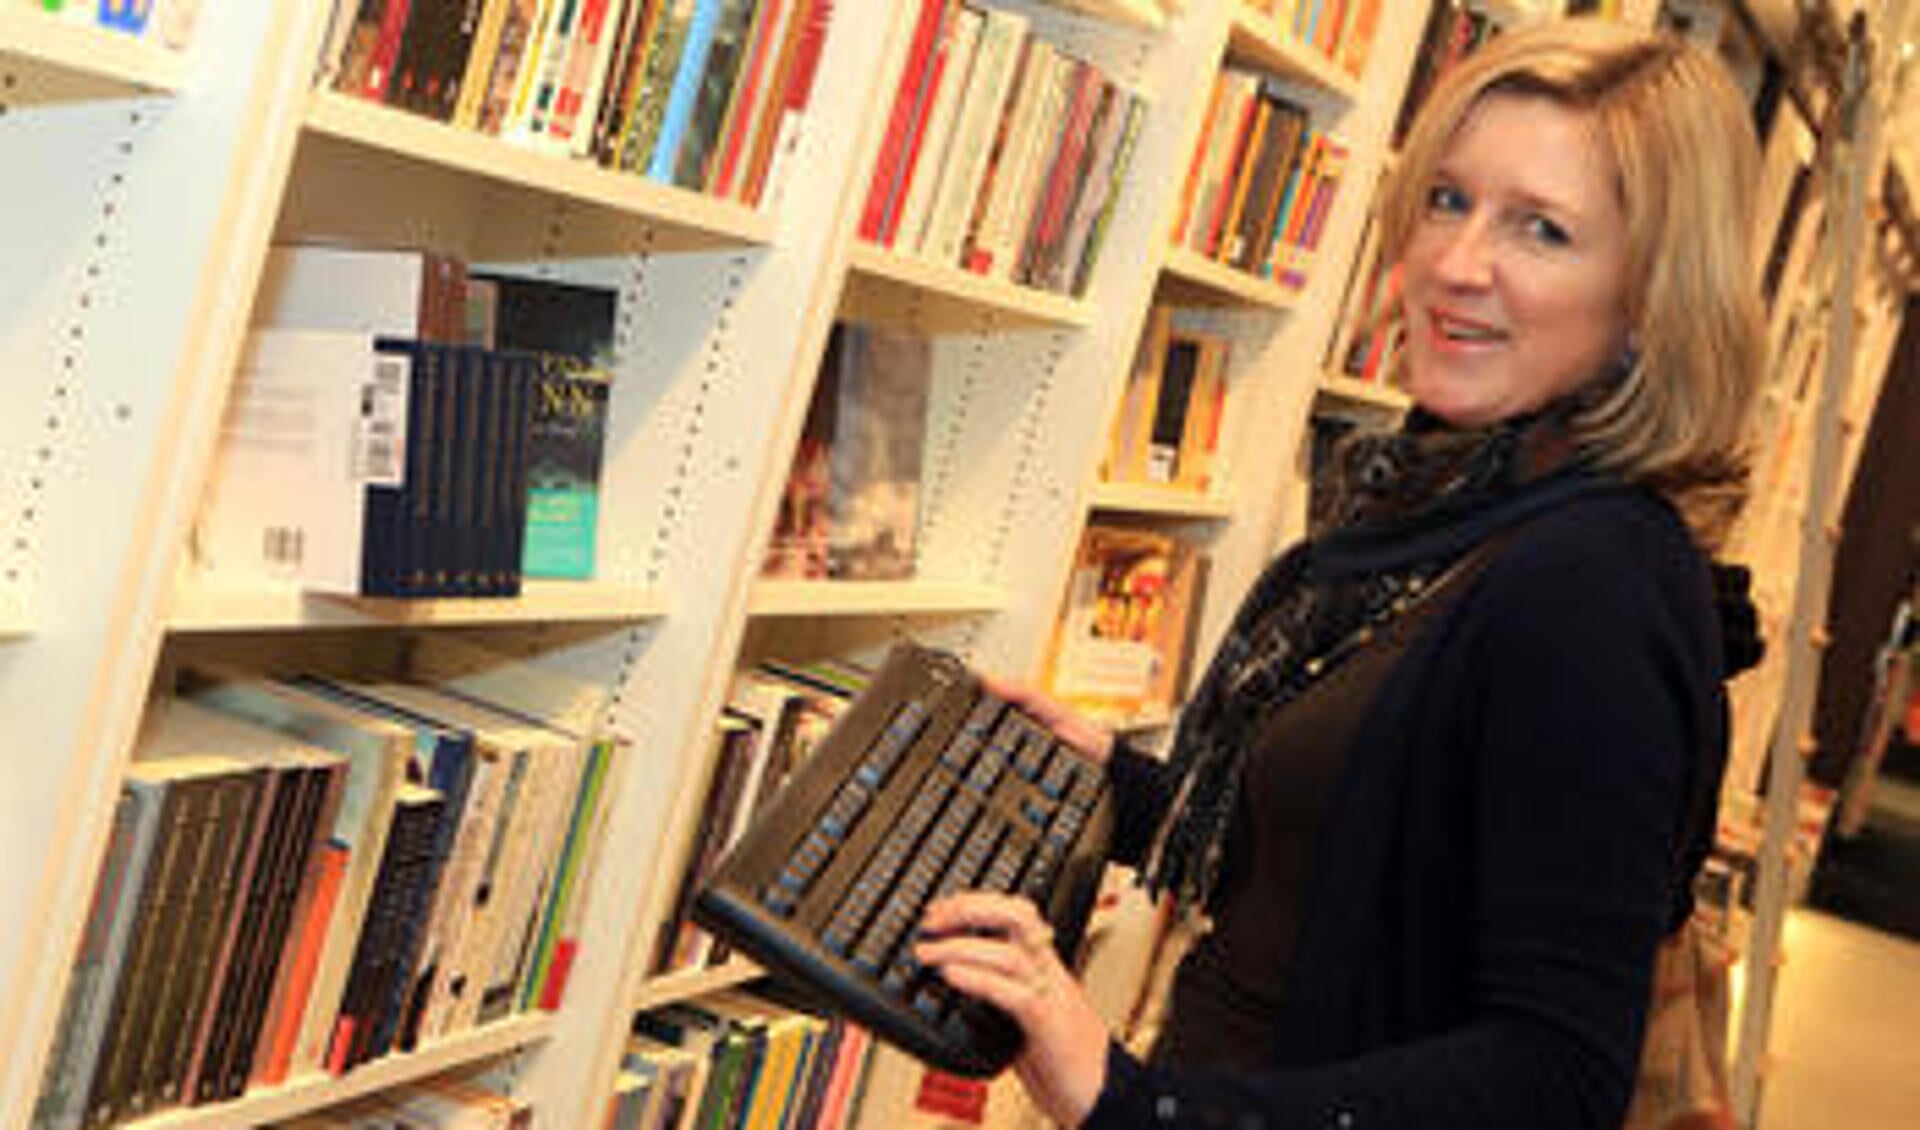 Online boeken kopen bij Derijks Oss | Weekblad Regio Oss Krant en Online